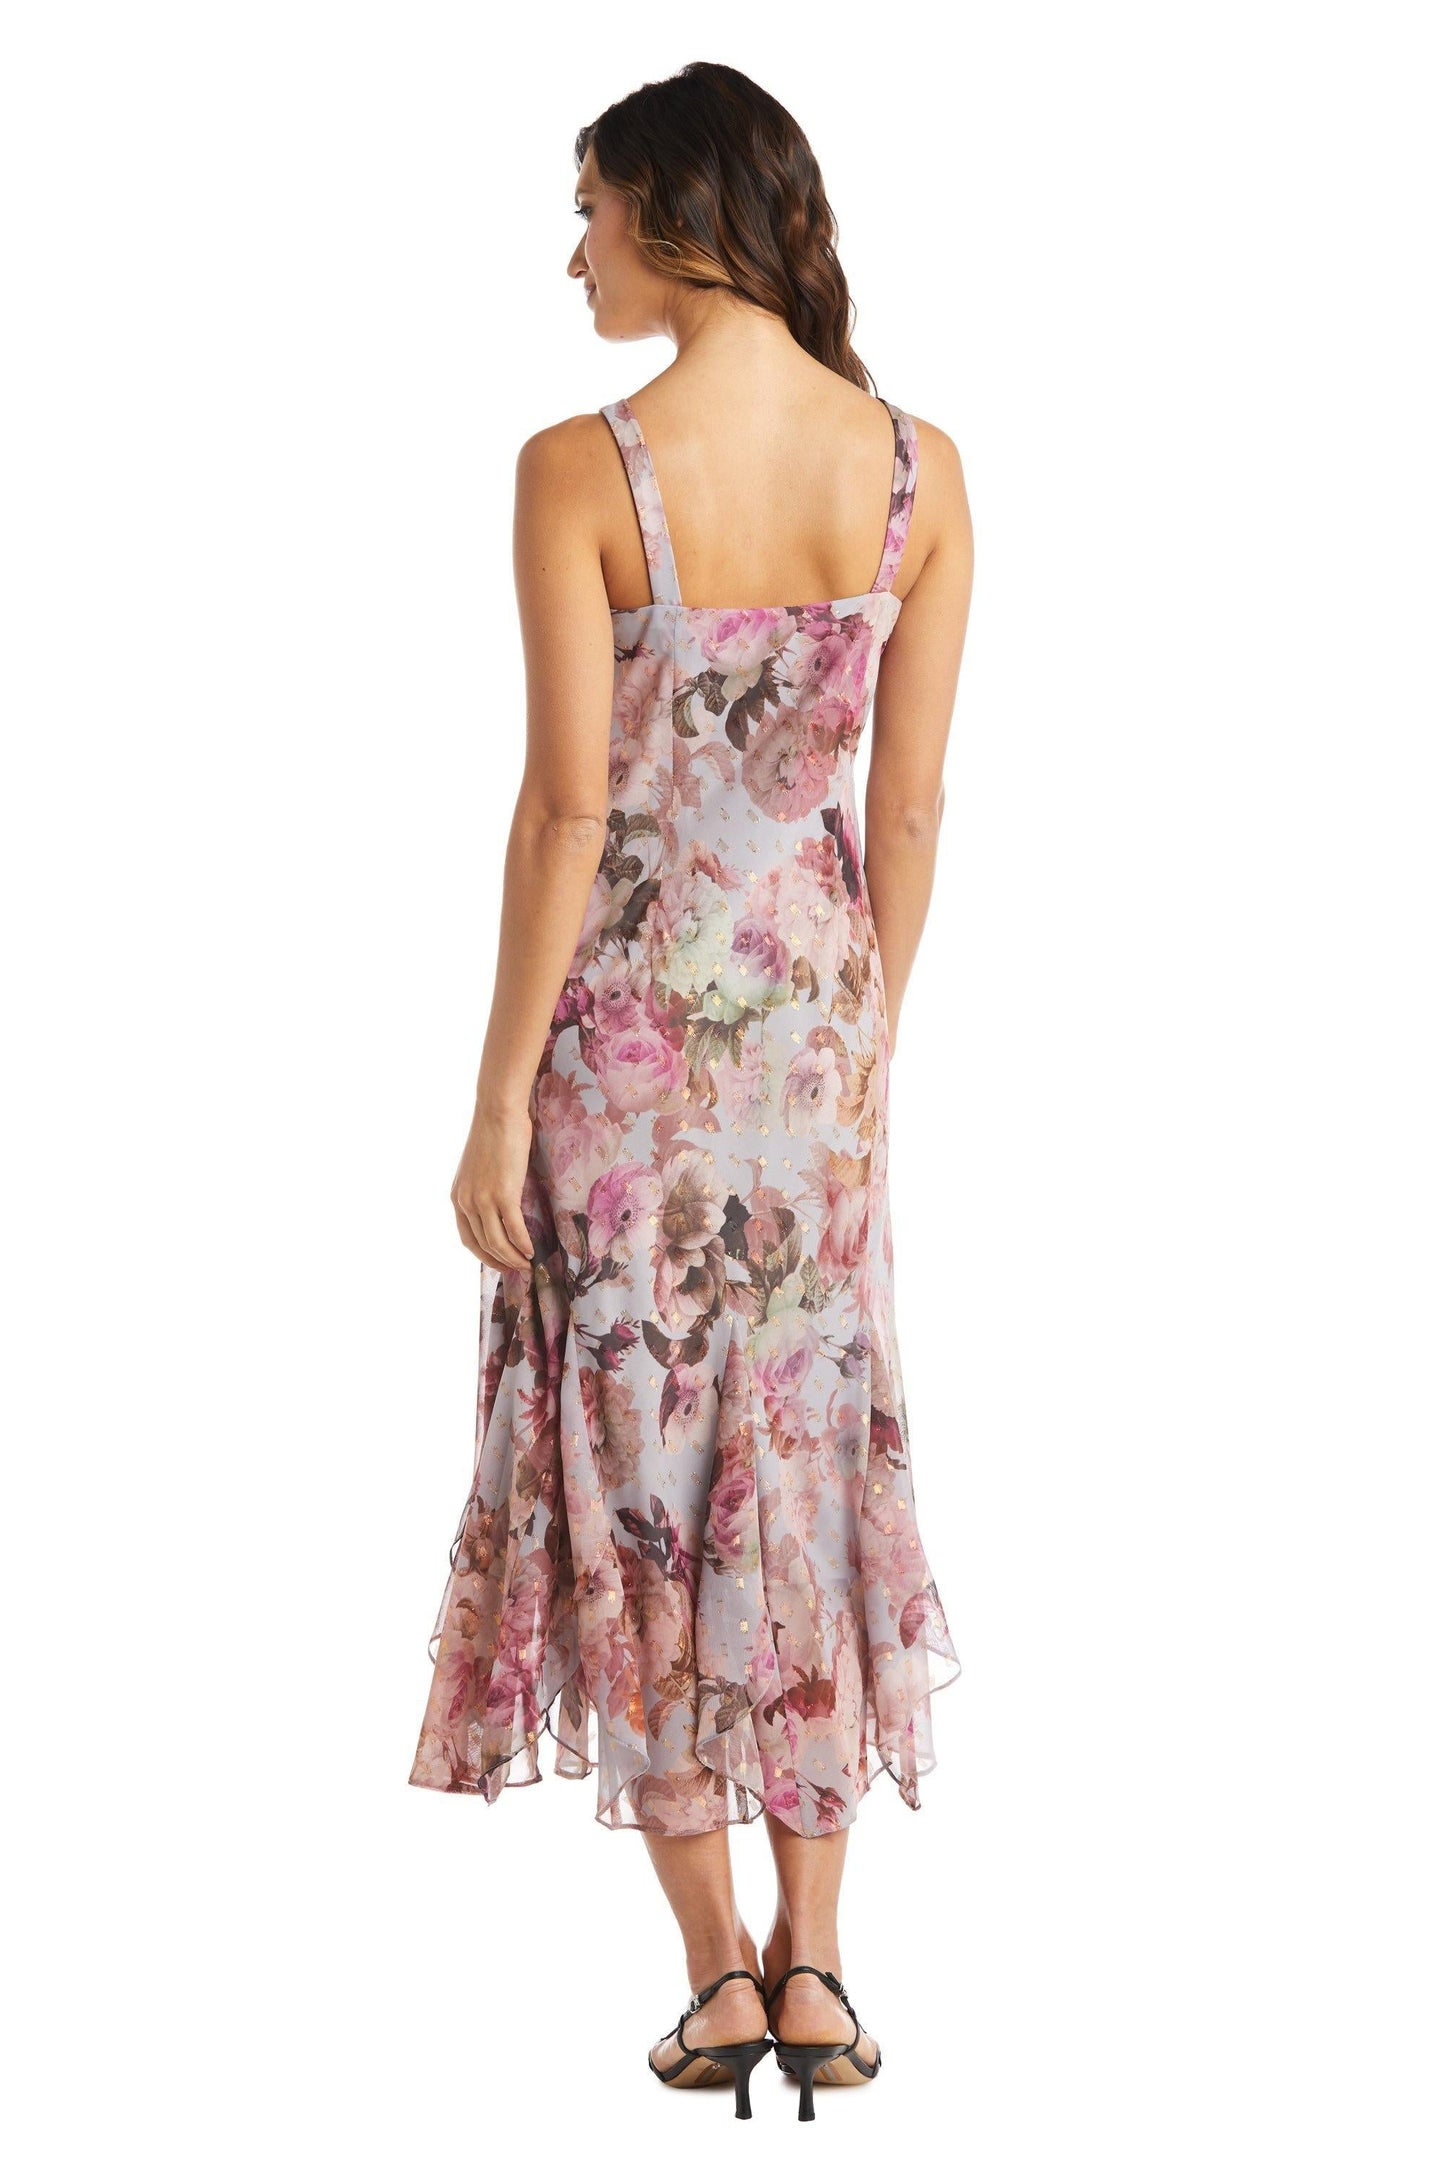 R&M Richards Long Petite Floral Chiffon Dress 7925P - The Dress Outlet